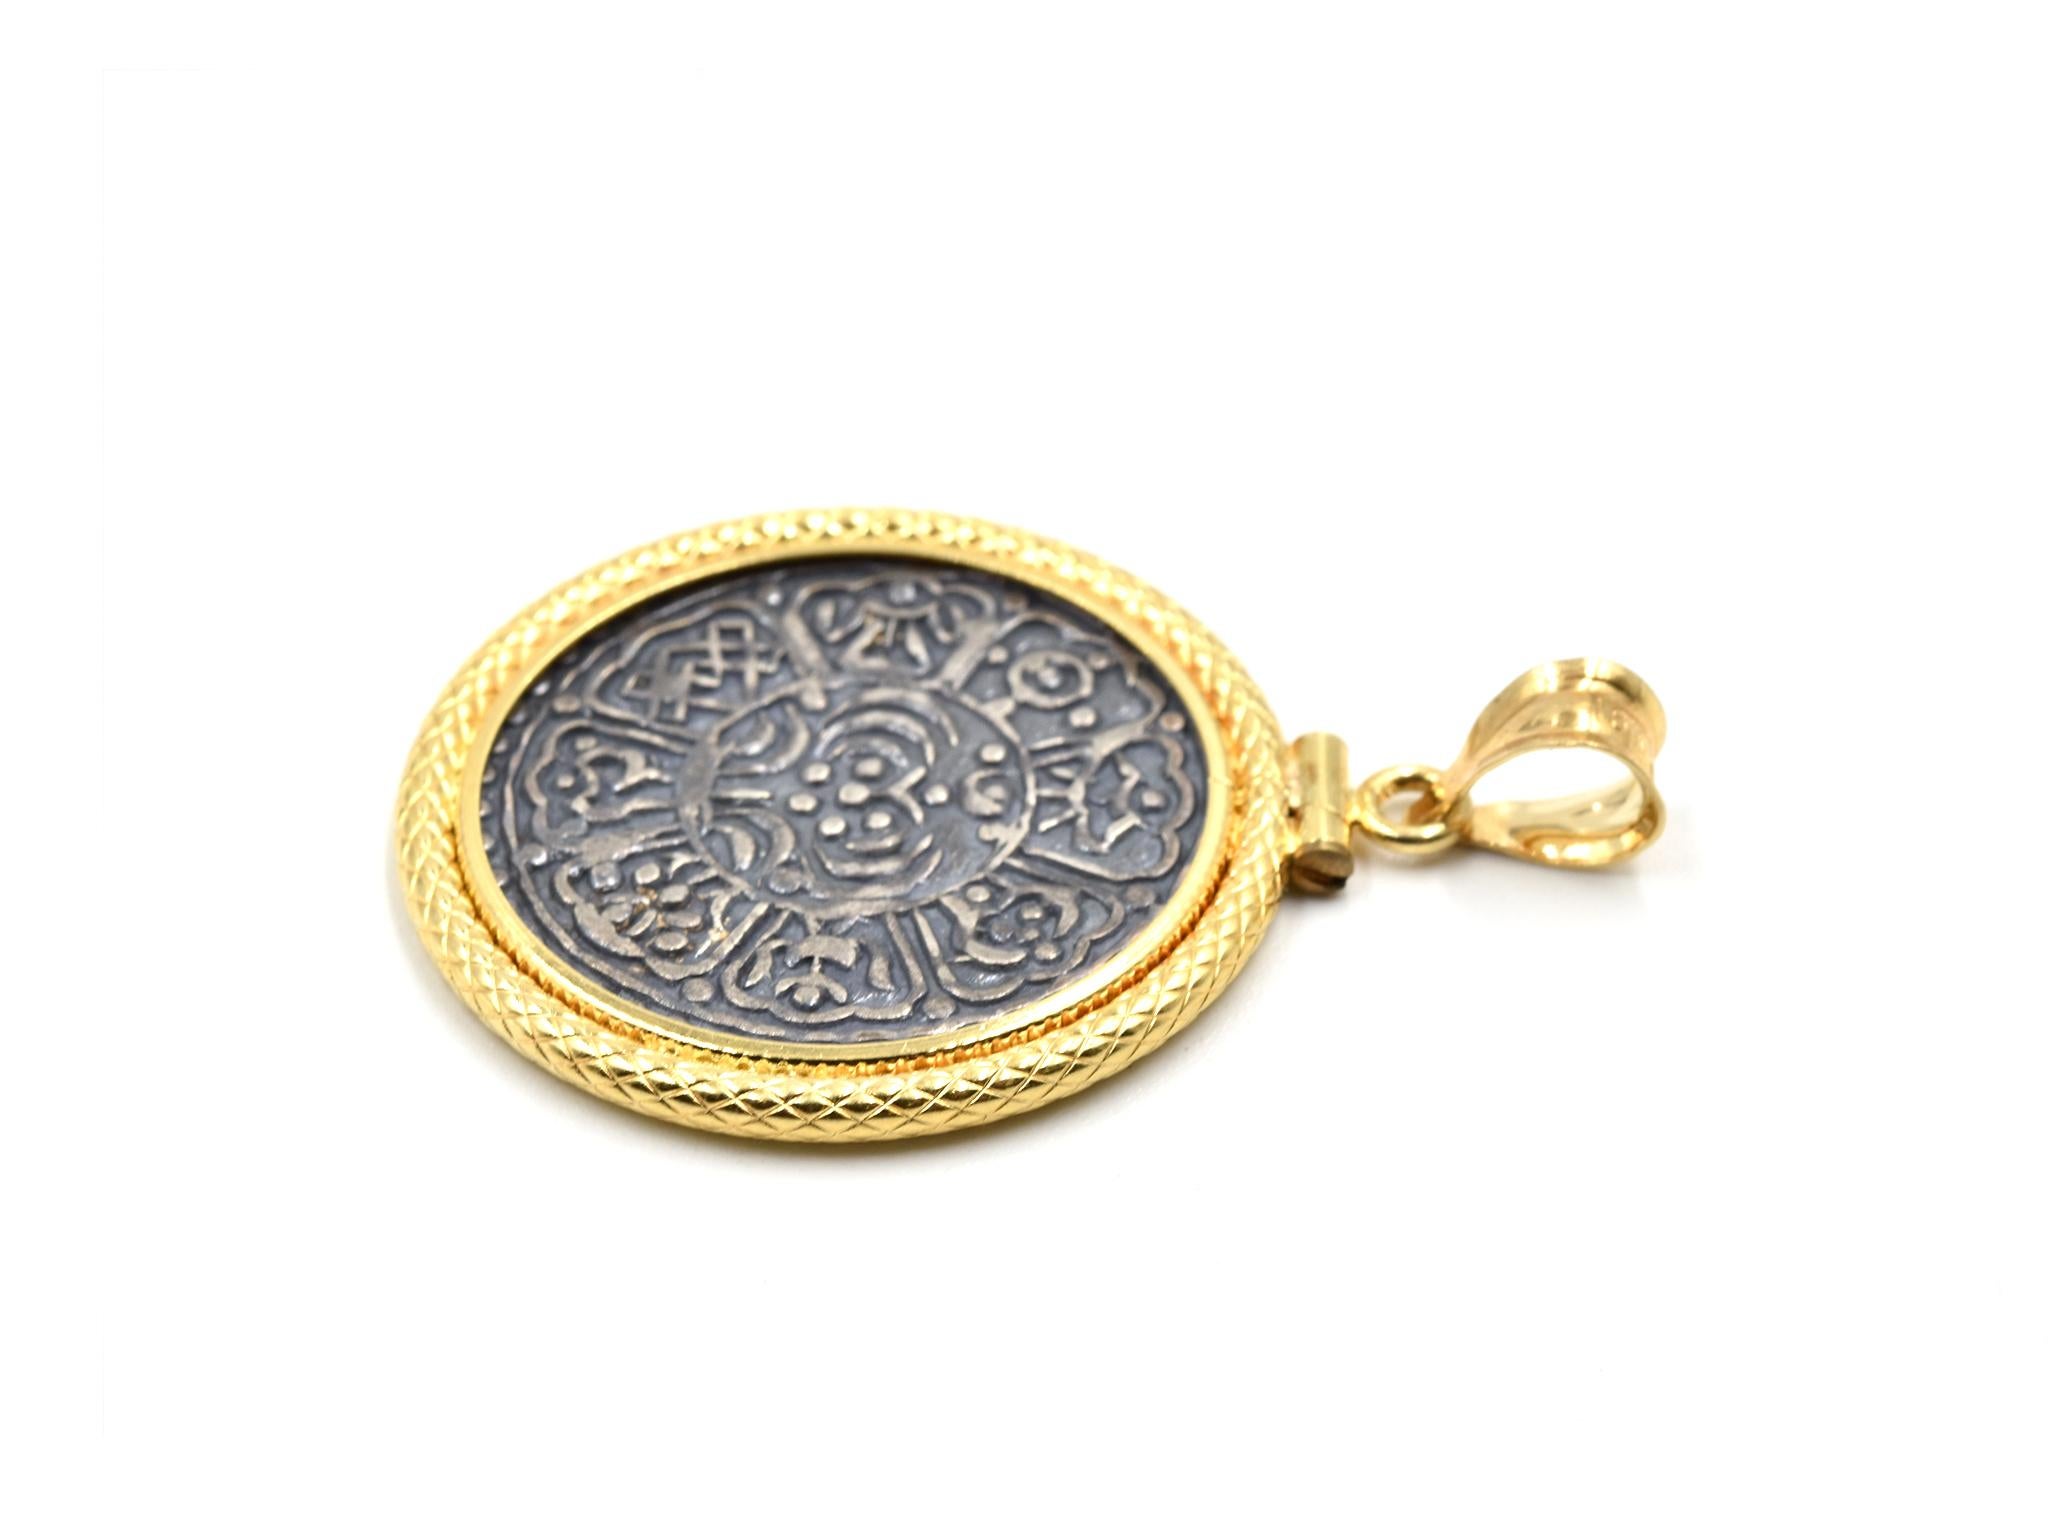 Designer: custom design
Material: 18k yellow gold
Dimensions: pendant measures 1 1/8-inch in diameter 
Weight: 6.00 grams
